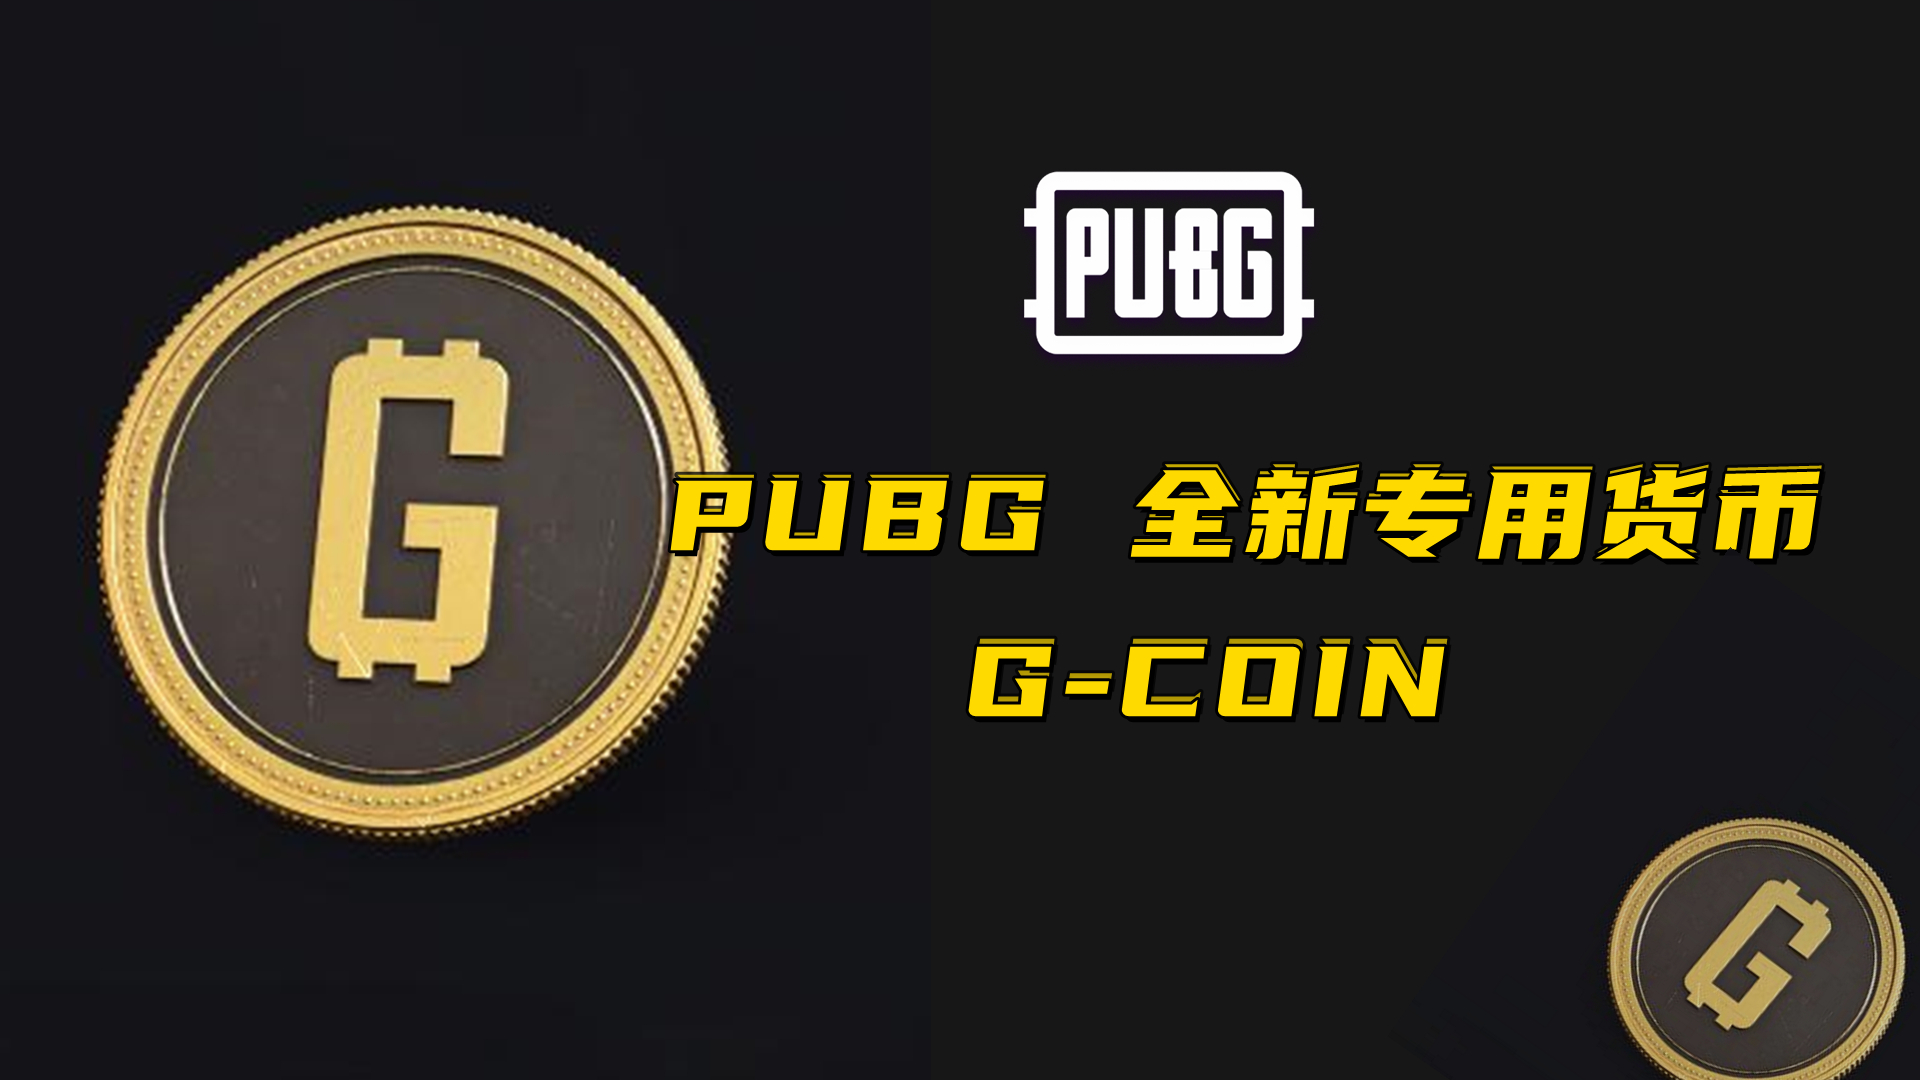 PUBG 全新专用货币 G-COIN